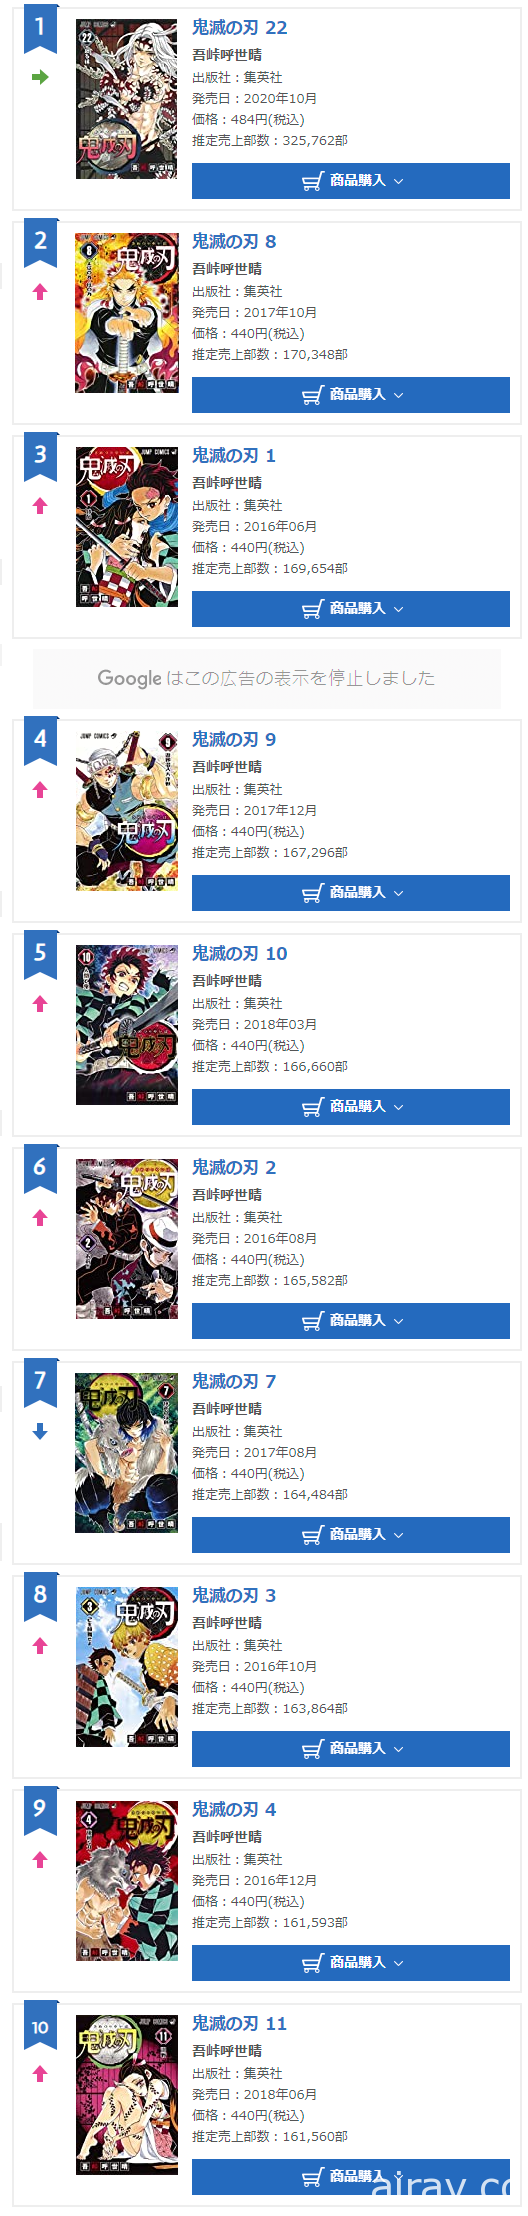 《鬼滅之刃》實體書籍銷售突破 9000 萬本 全套作品佔據 Oricon 週間銷售榜前 22 名